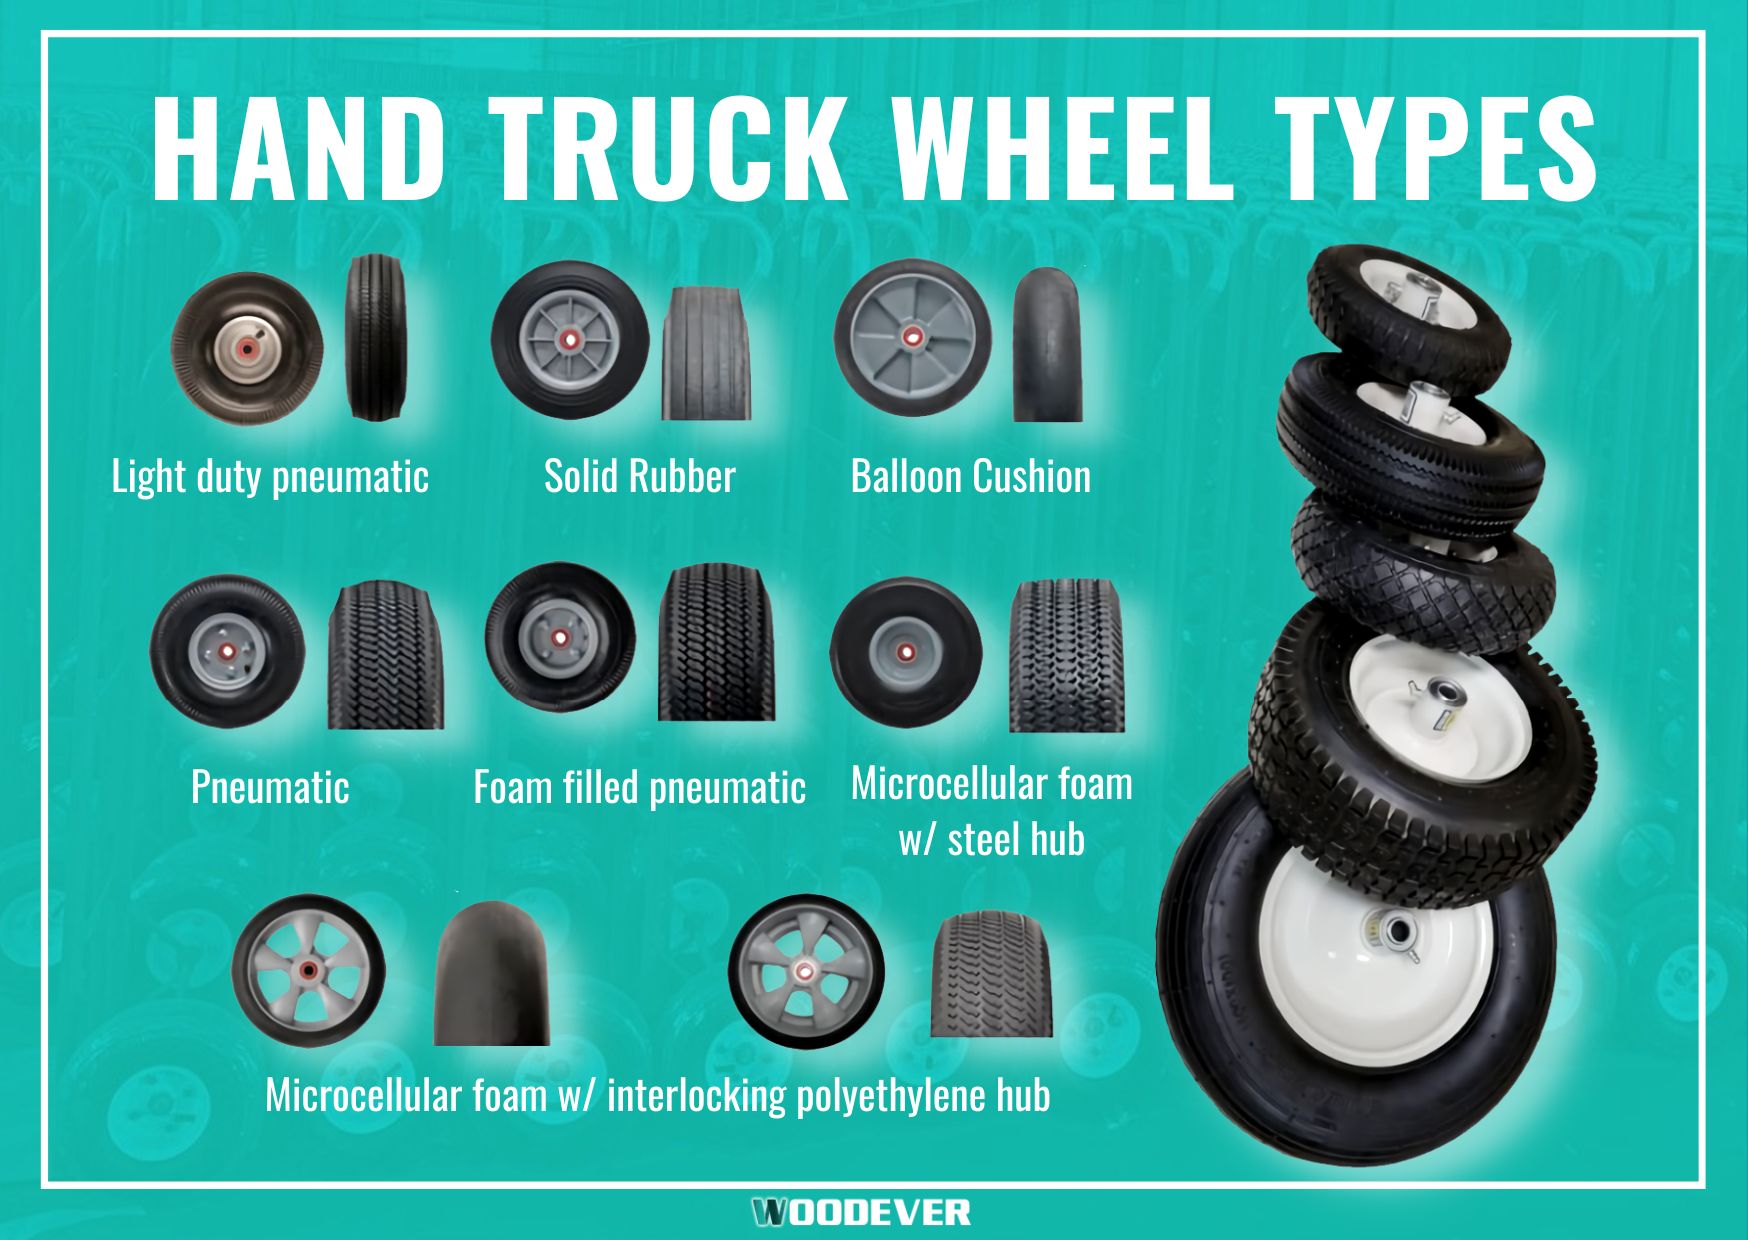 Arten von Rädern für Handwagen zur Handhabung von Gegenständen.